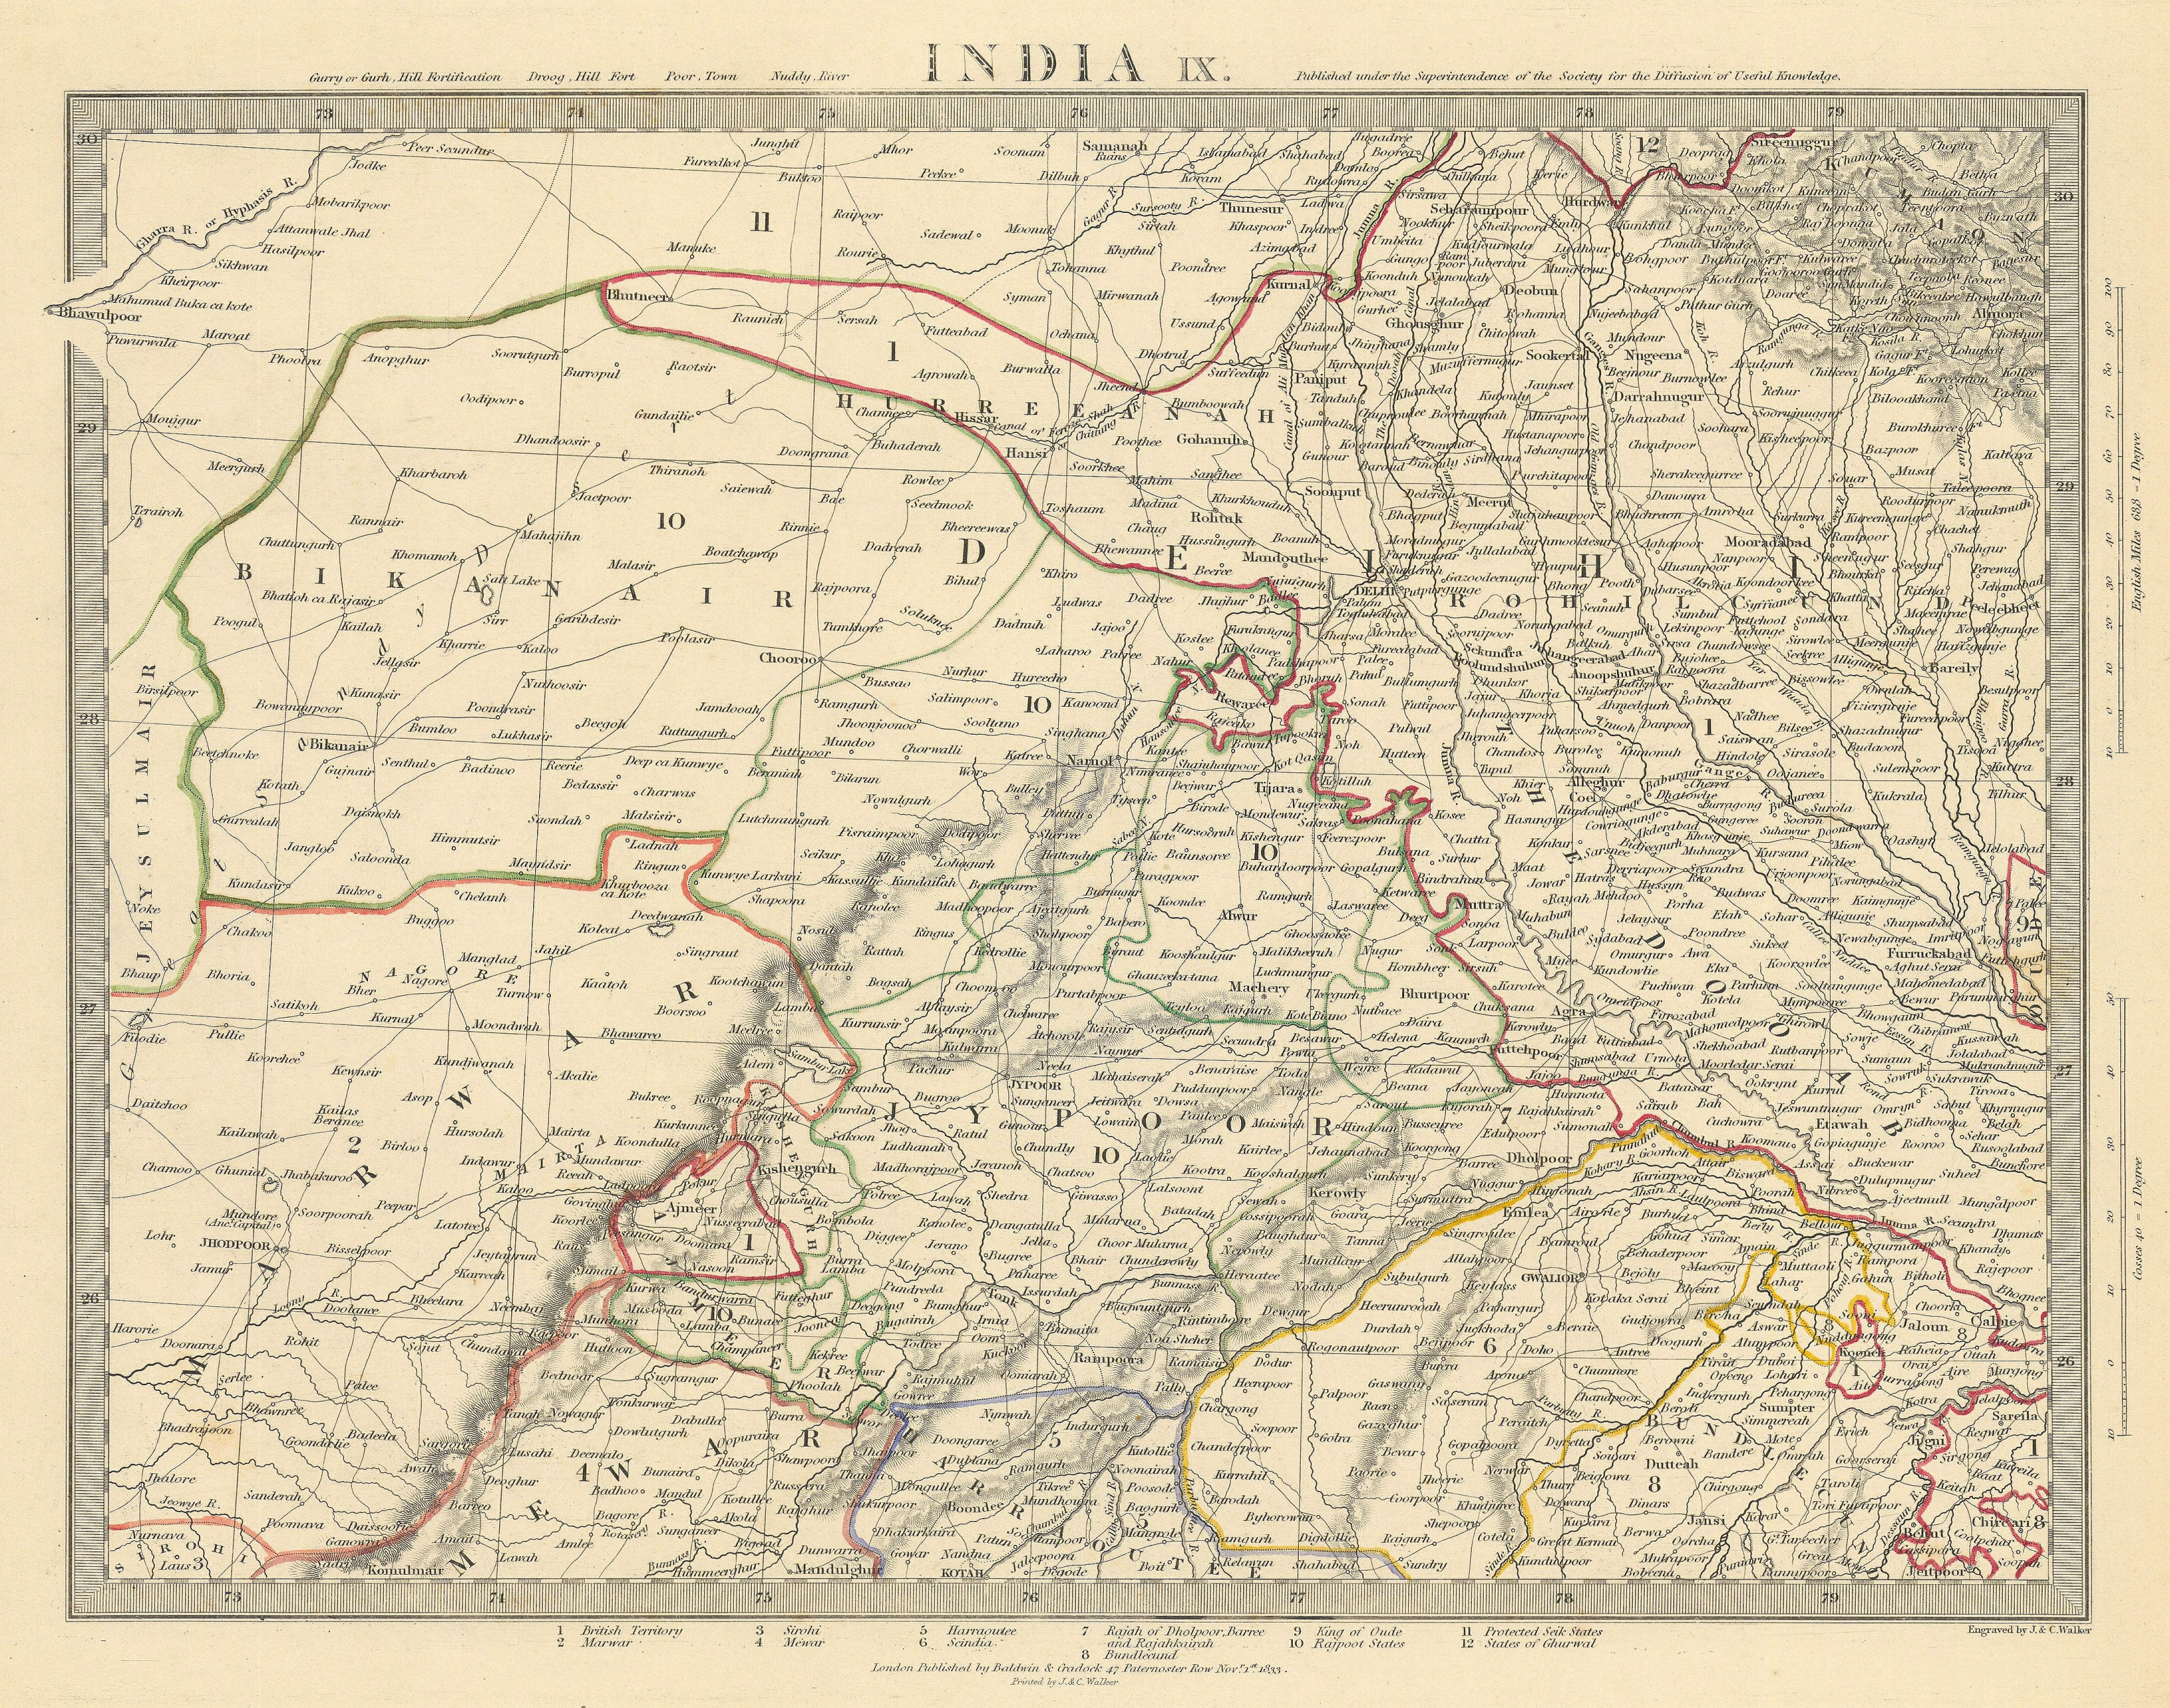 RAJASTHAN. India. Delhi Jaipur Marwar Bikaner Mewar Bundelkhand. SDUK 1844 map